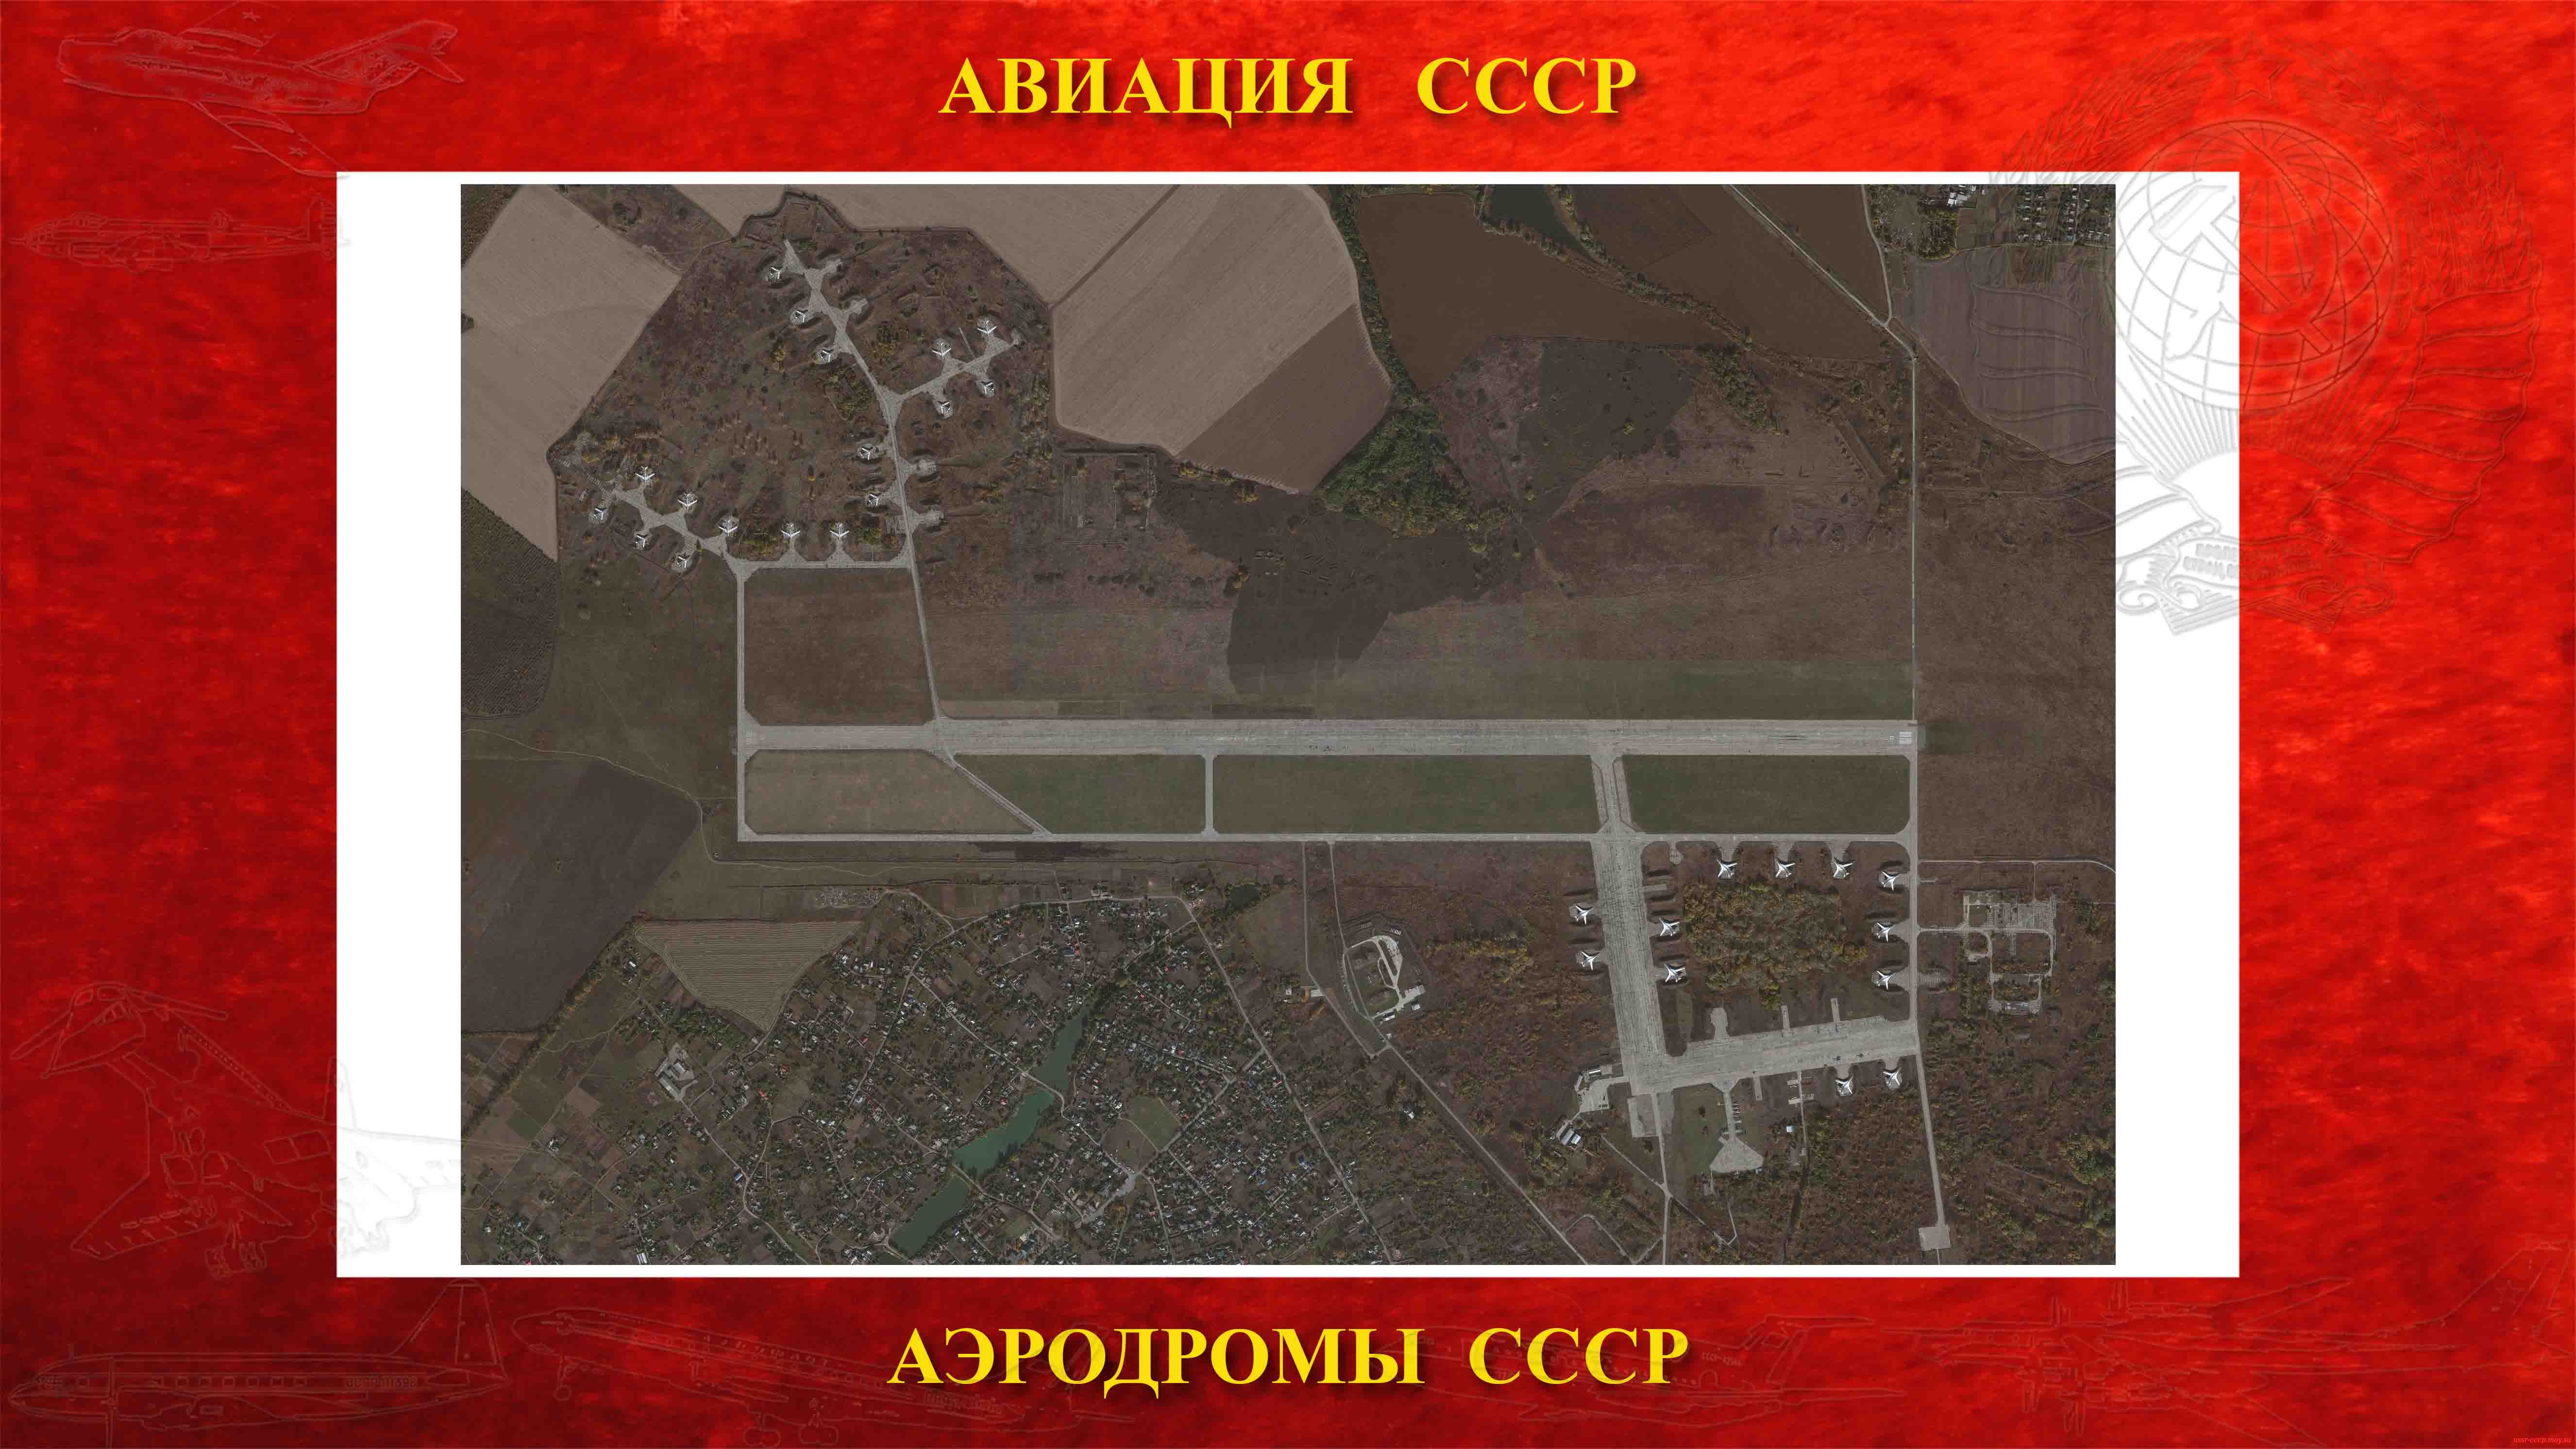 Полтава-4 — Аэродром тяжелой стратегической авиации СССР (1936)